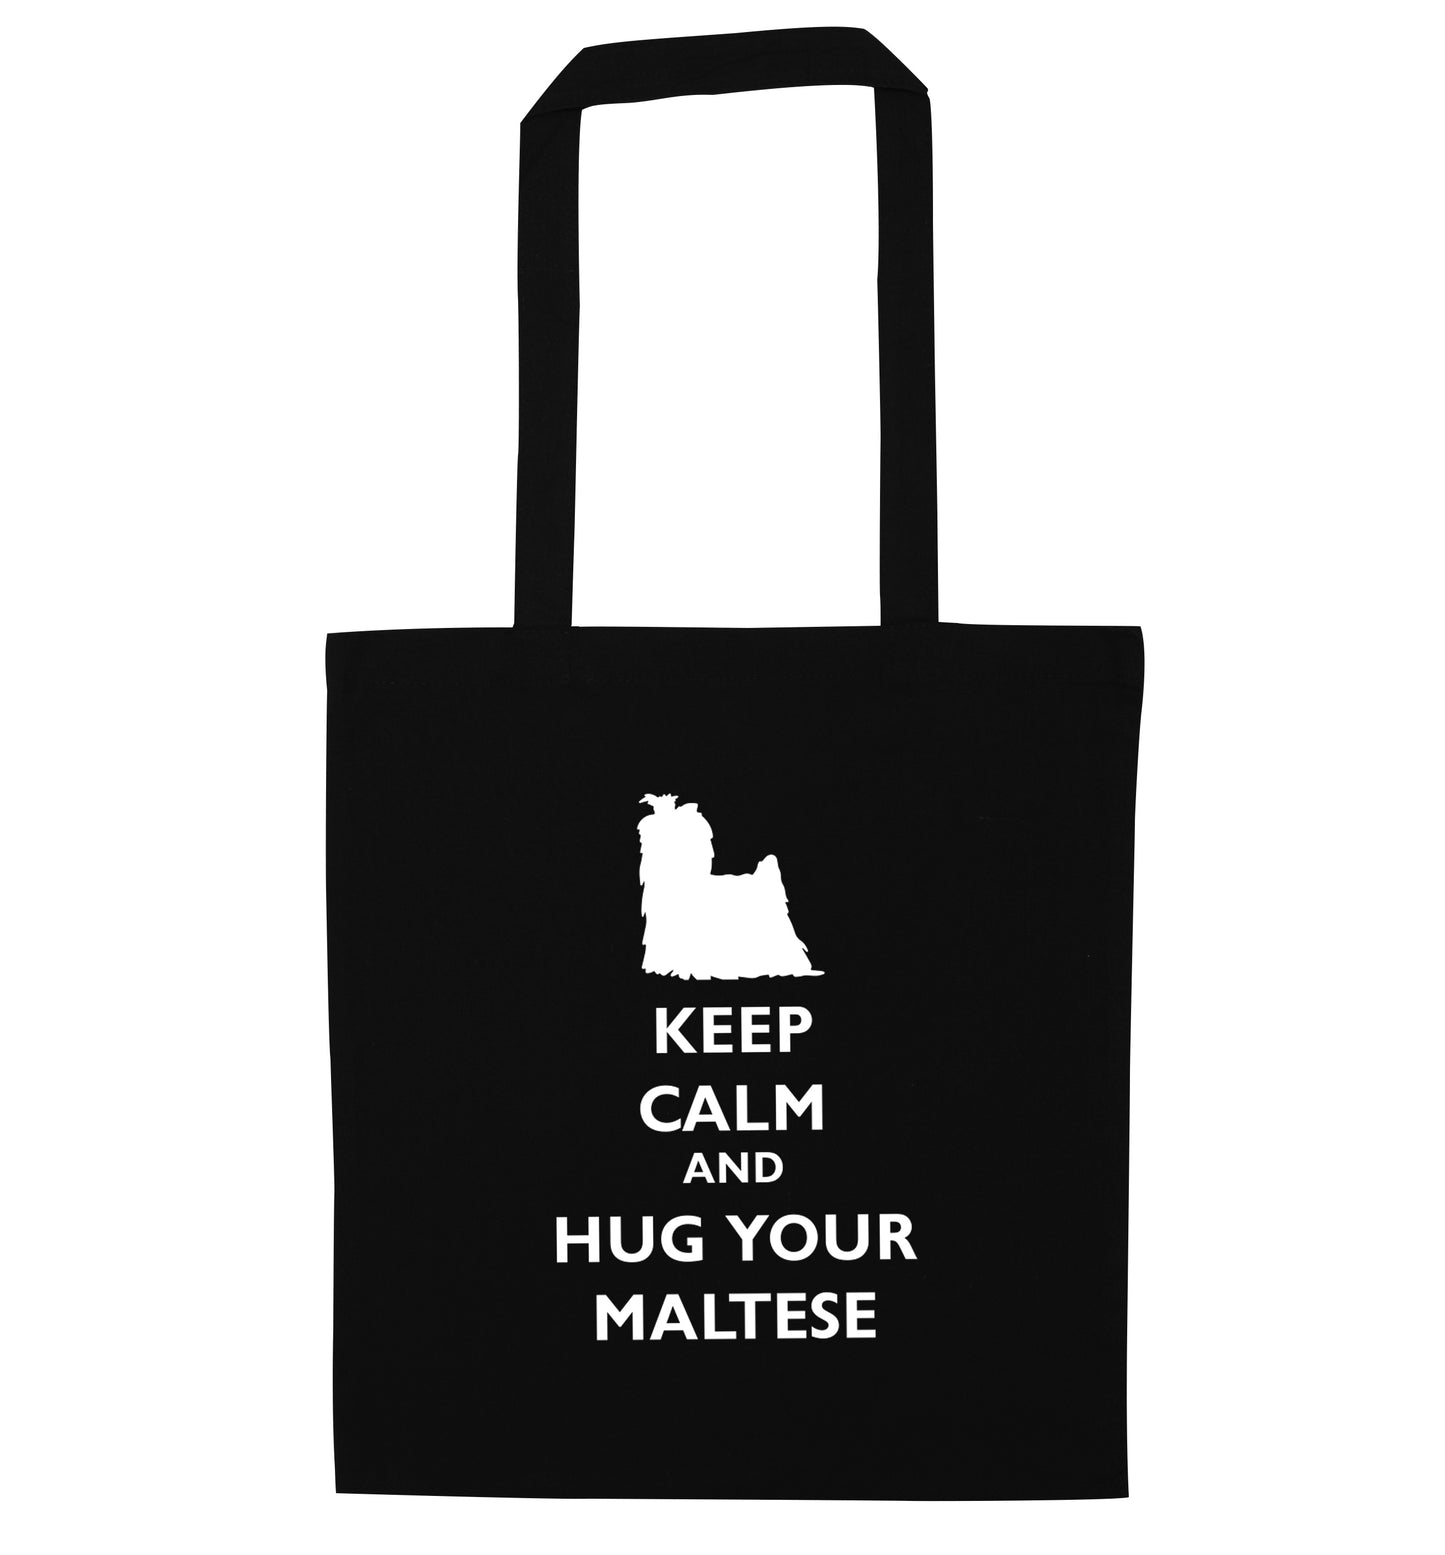 Keep calm and hug your maltese black tote bag